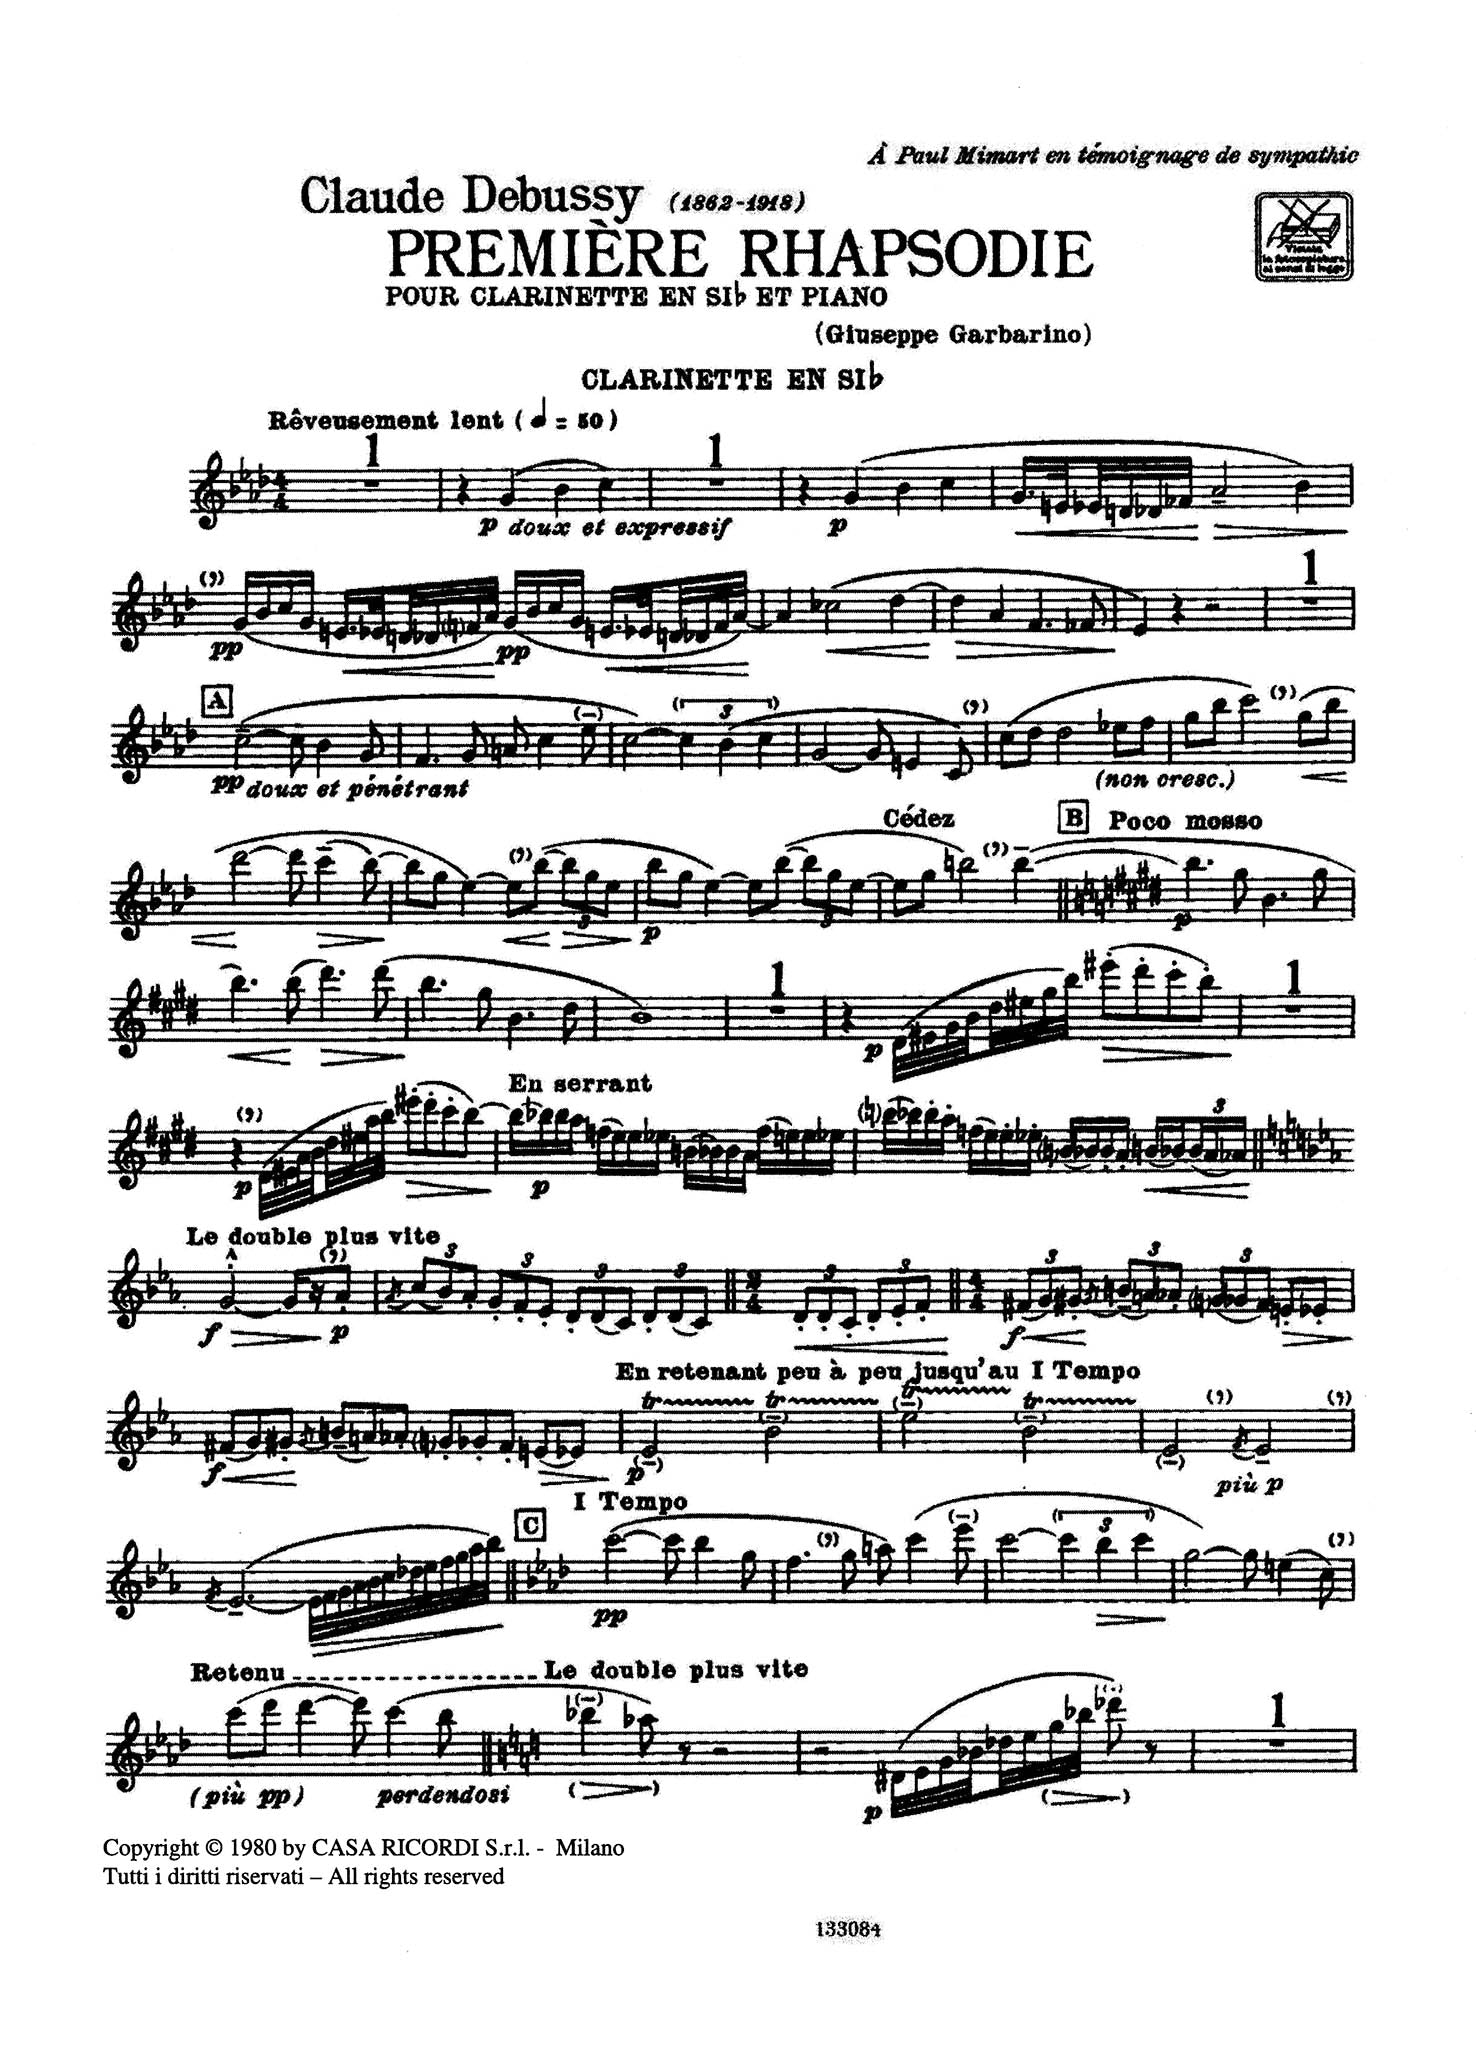 Première rhapsodie Clarinet Part